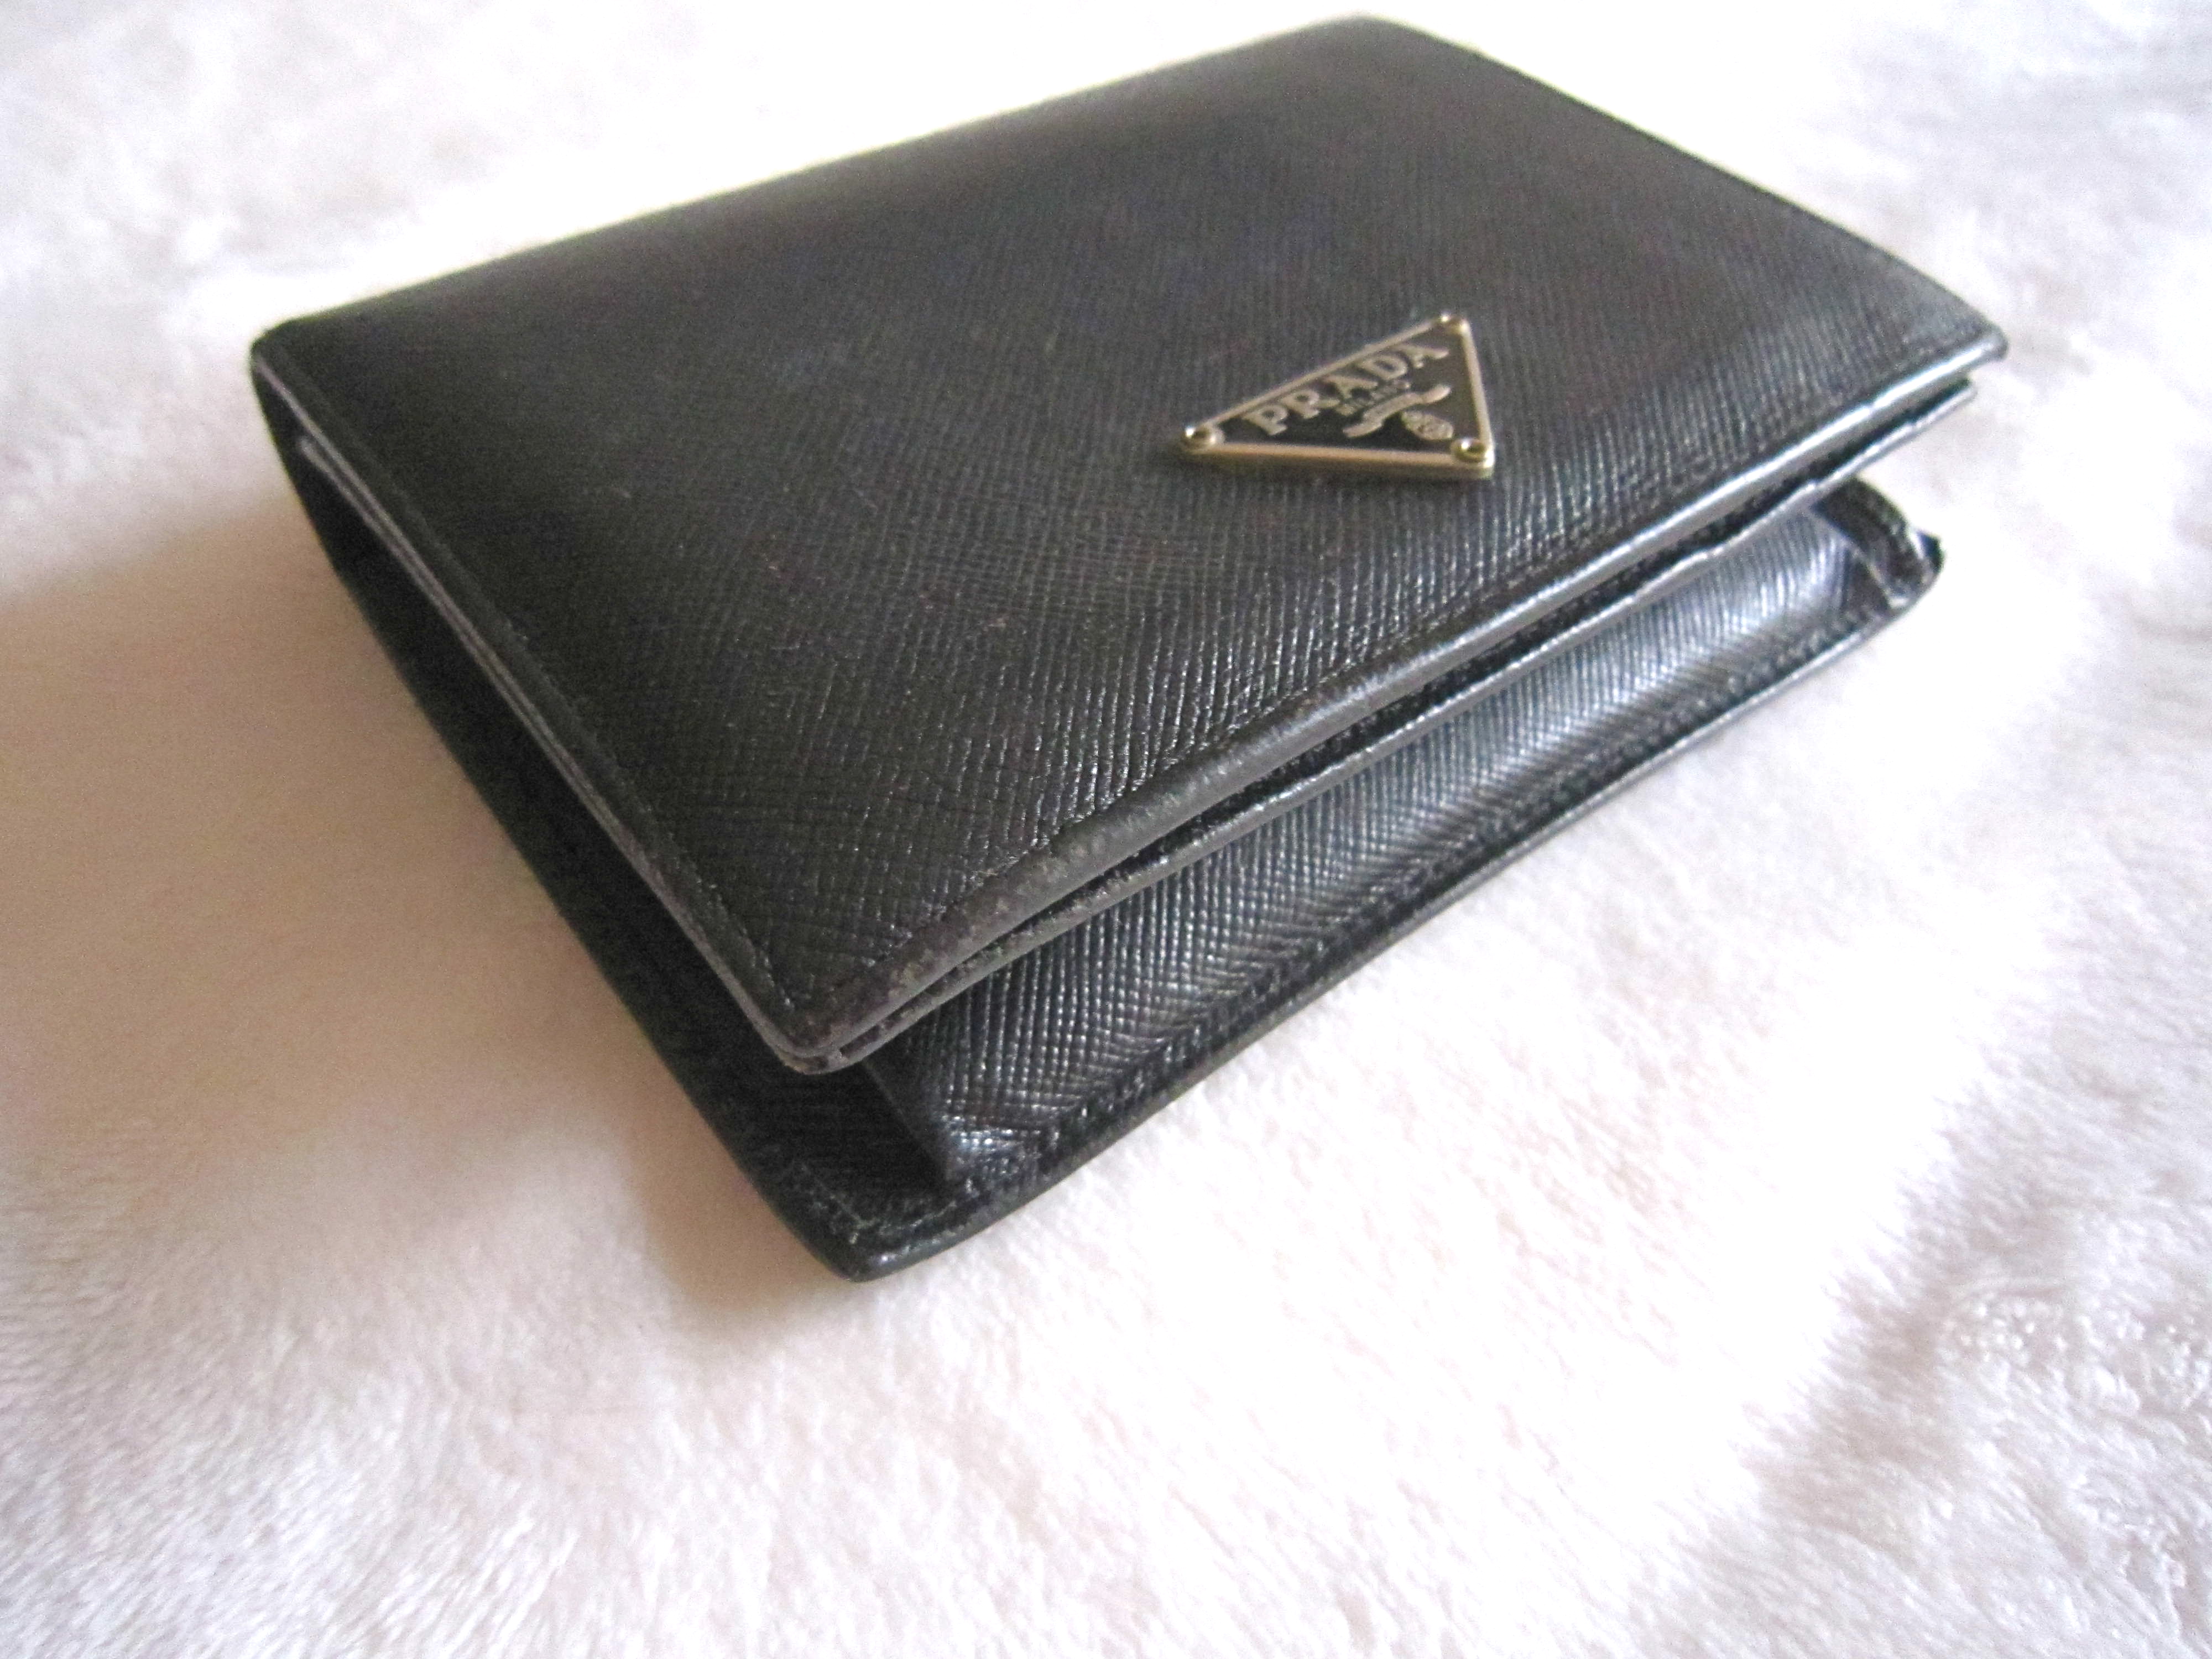 Prada Small Saffiano Leather Wallet in Black